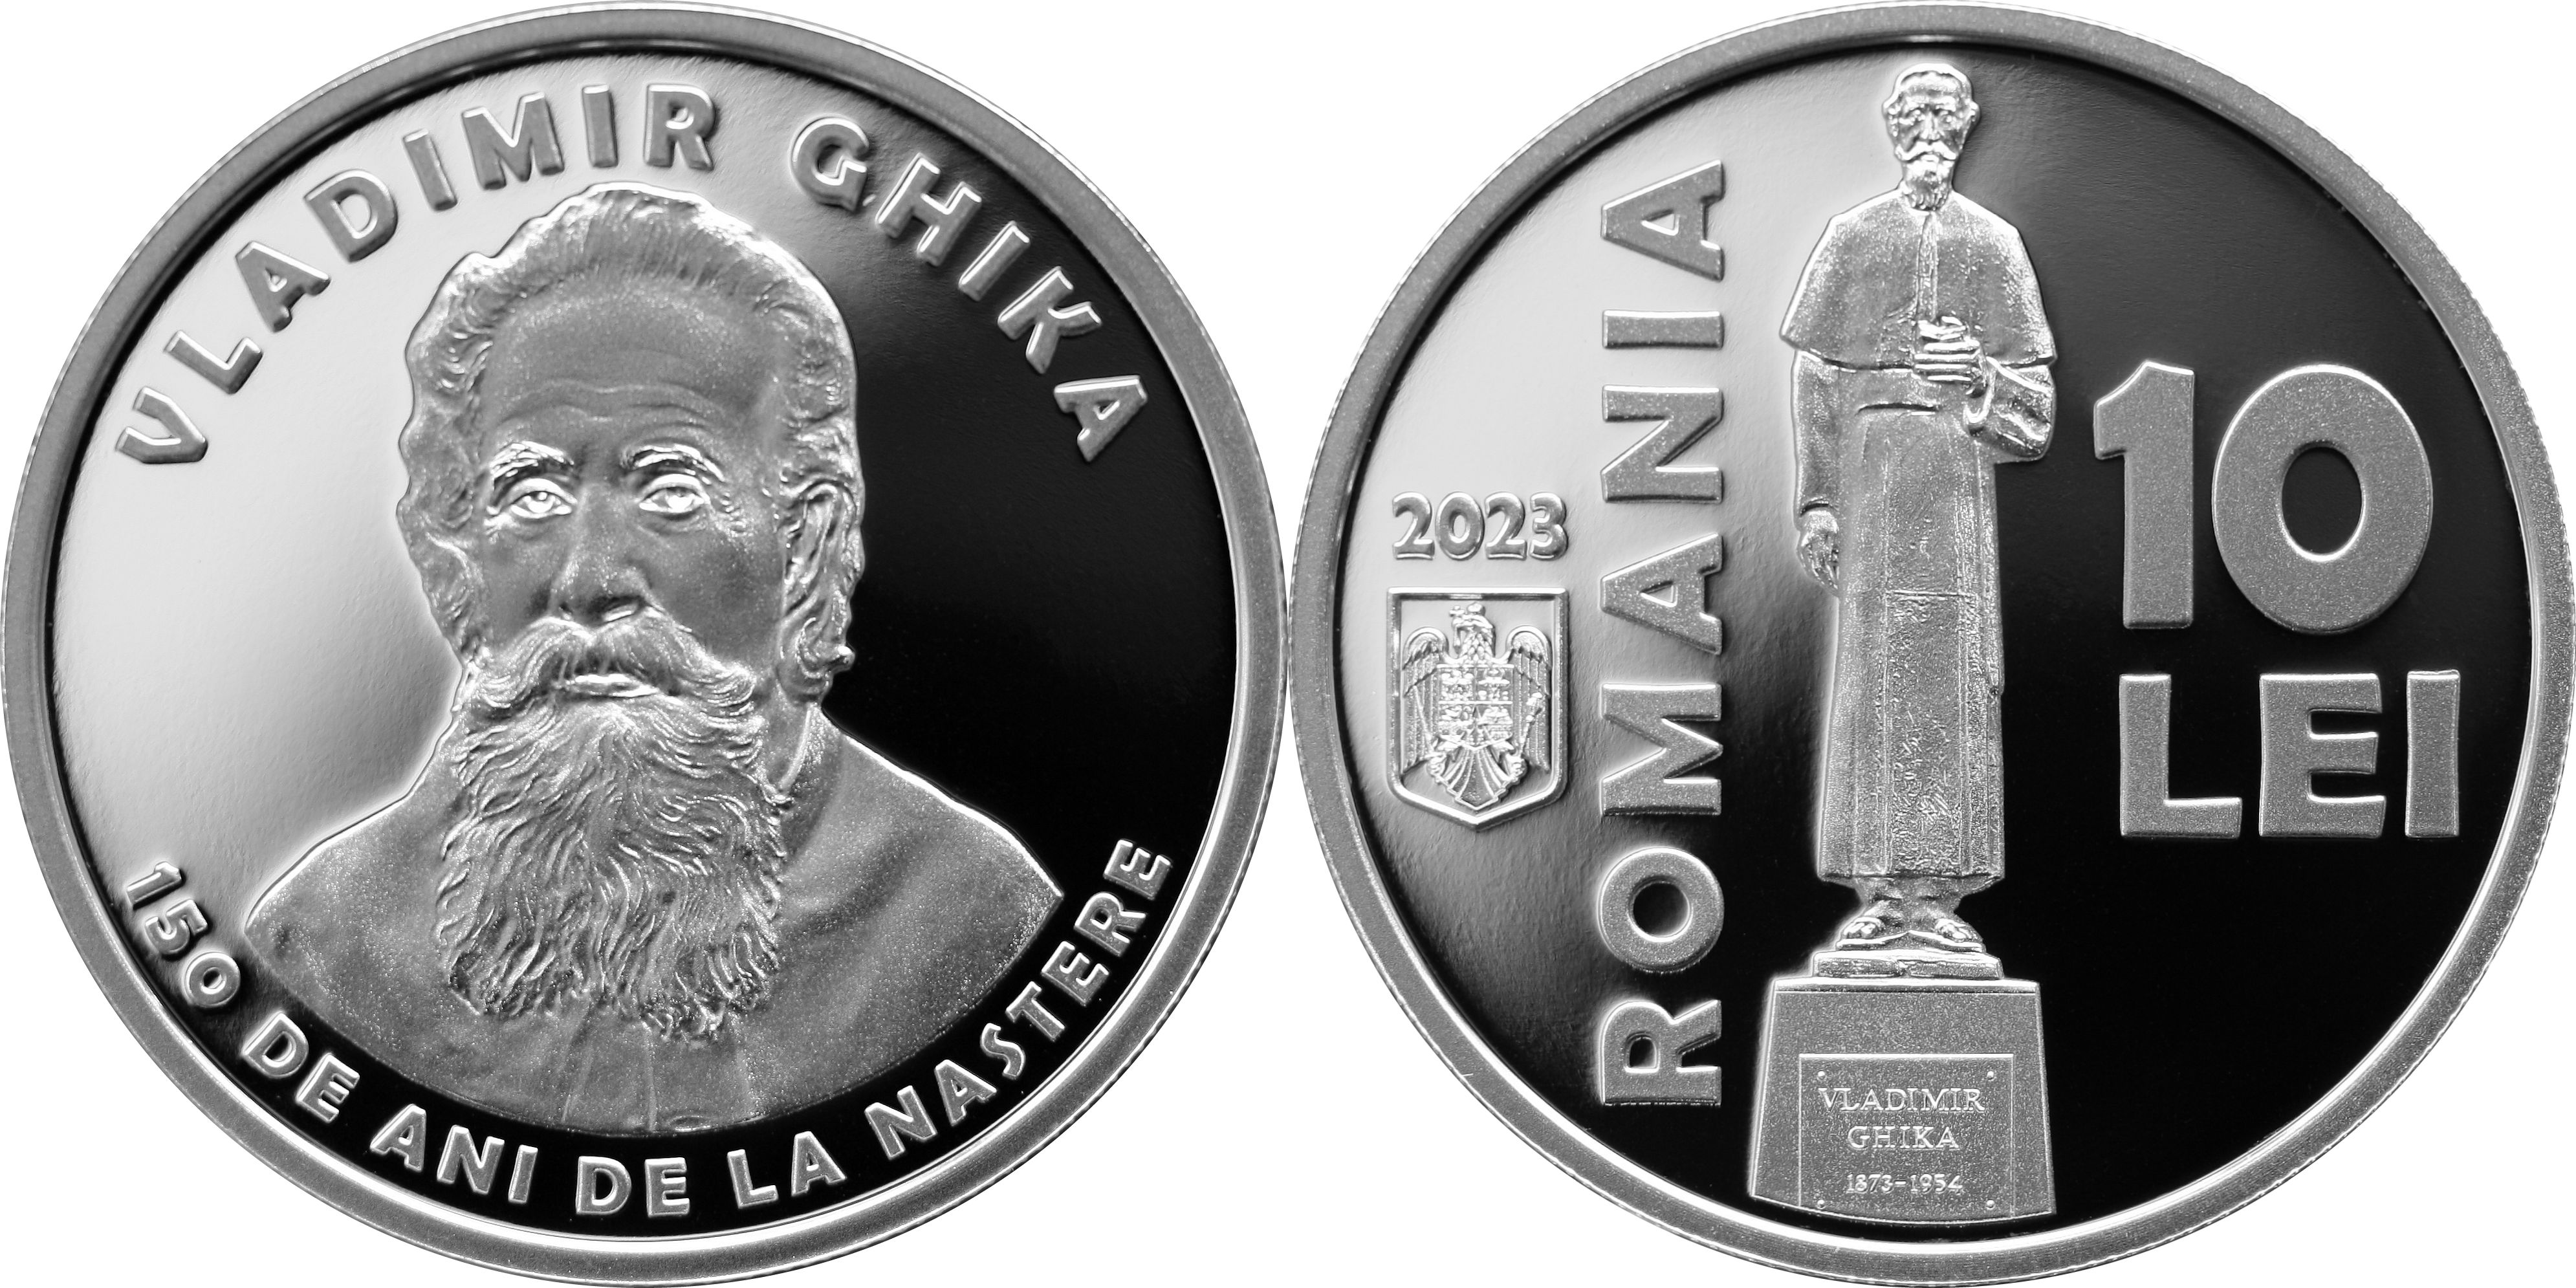 Lansare numismatică. Monedă de argint dedicată lui Vladimir Ghika, fondatorul primului spital gratuit - x-lansare-numismatica-1703670678.jpg